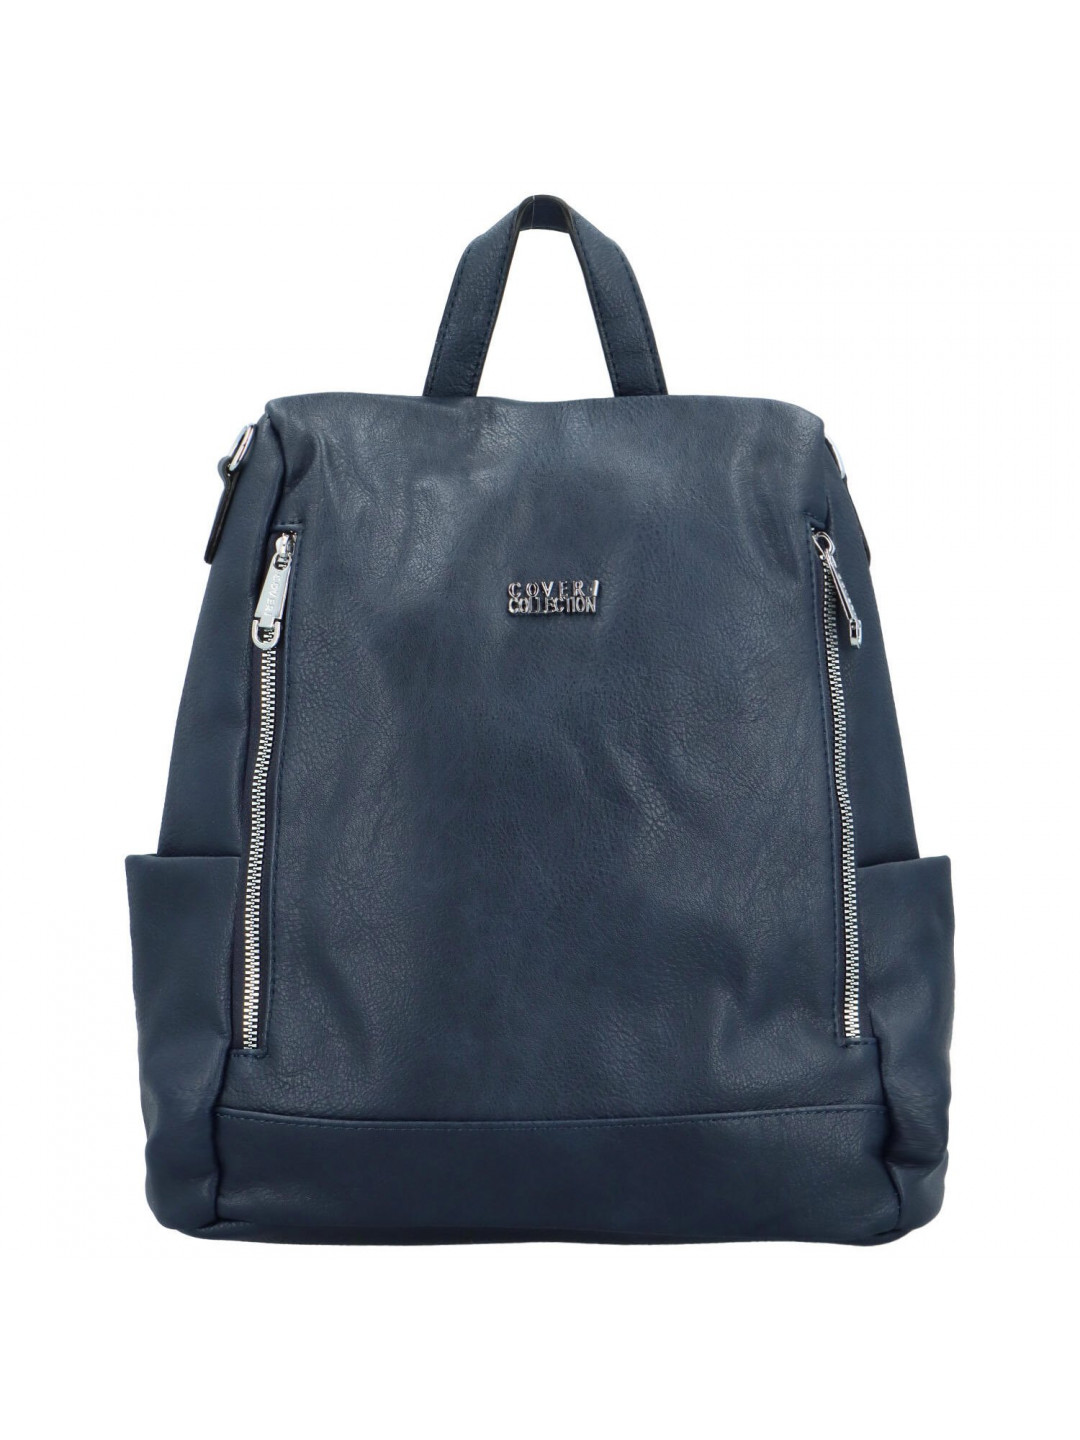 Stylový dámský koženkový kabelko batoh Trinida tmavě modrý